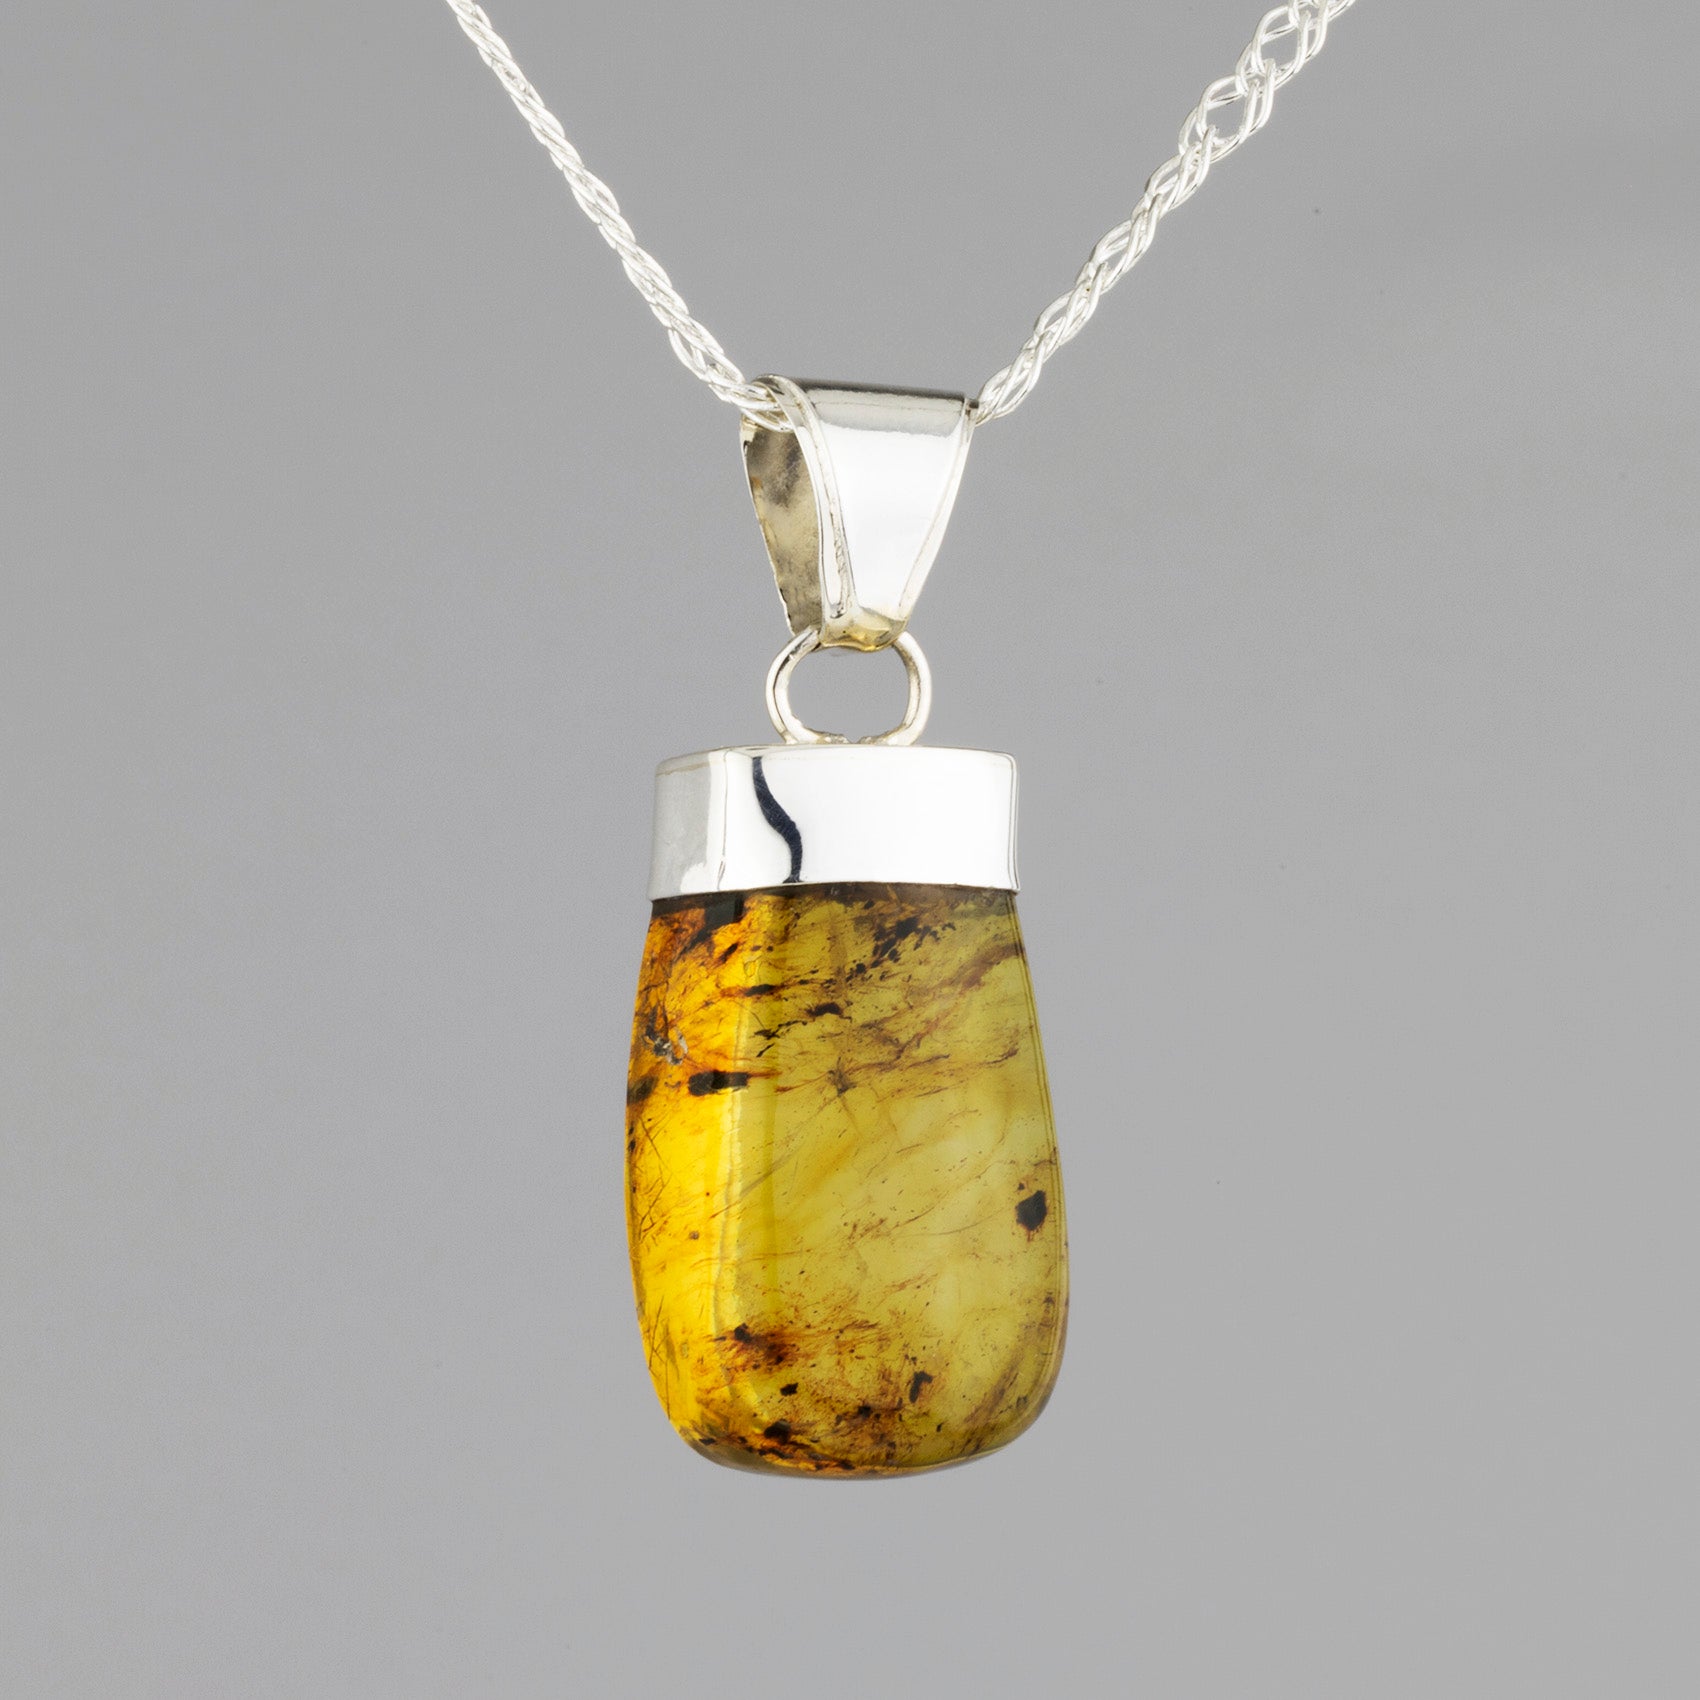 Chiapas amber pendant necklace